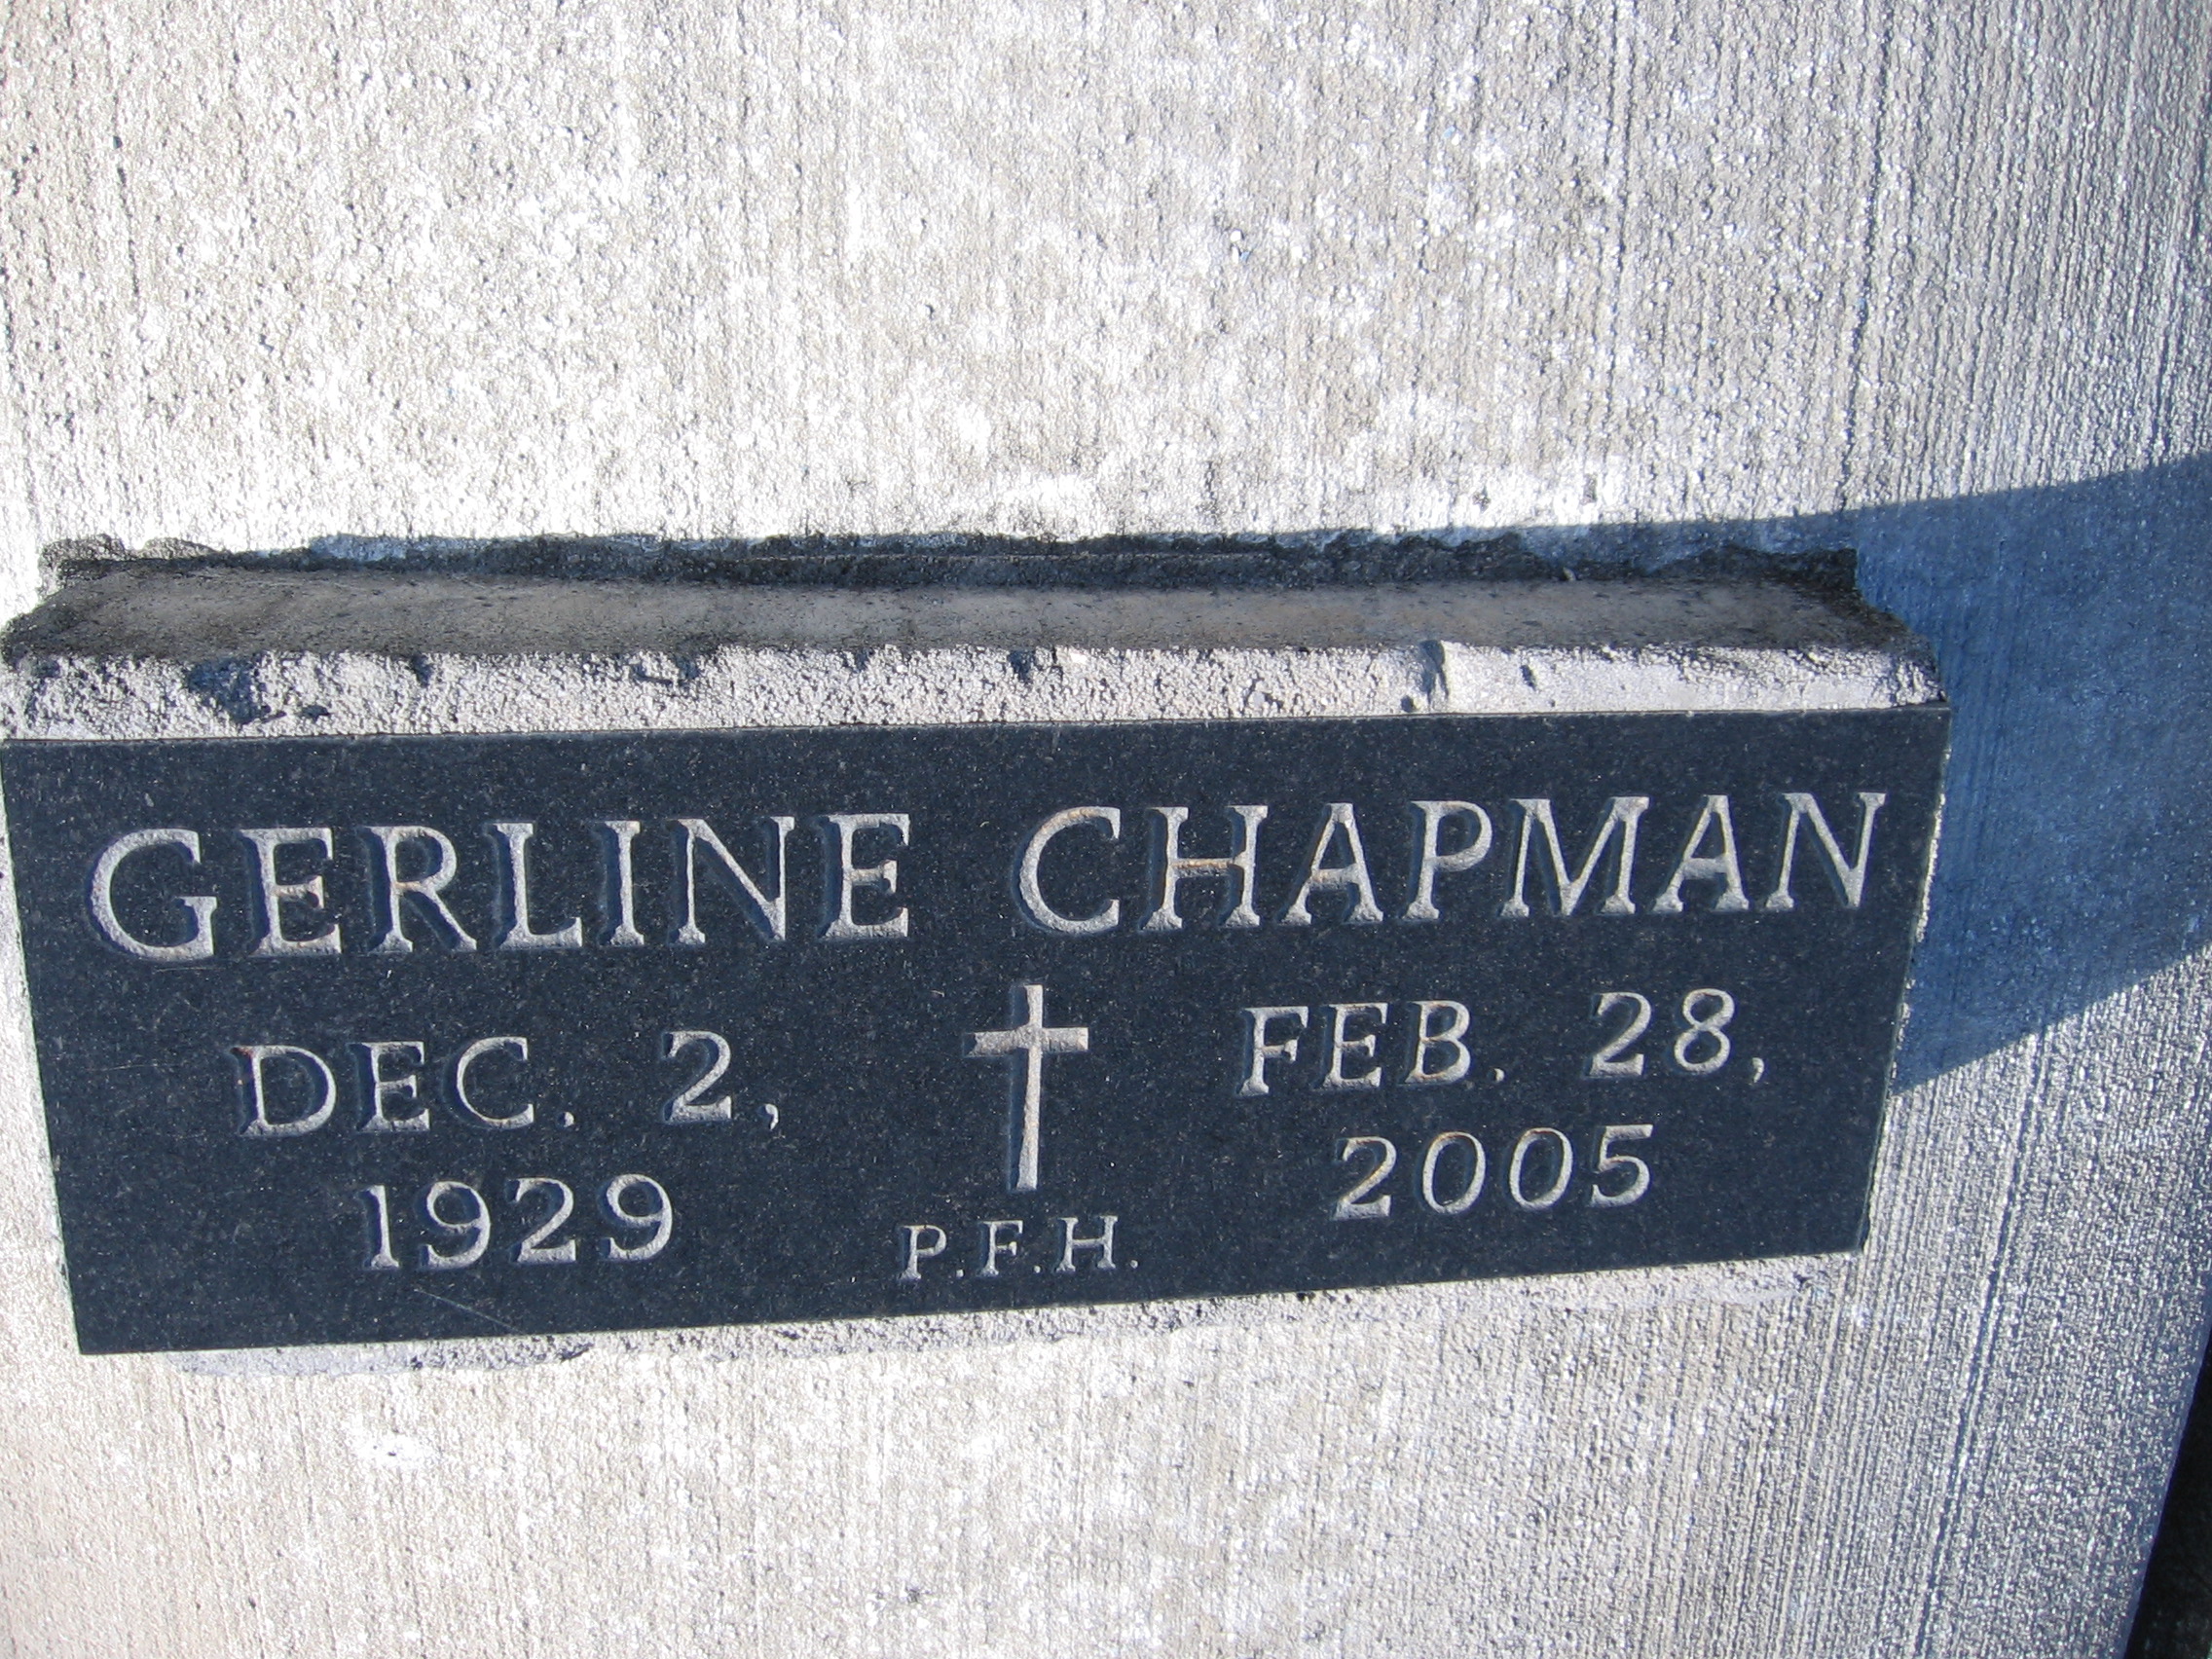 Gerline Chapman